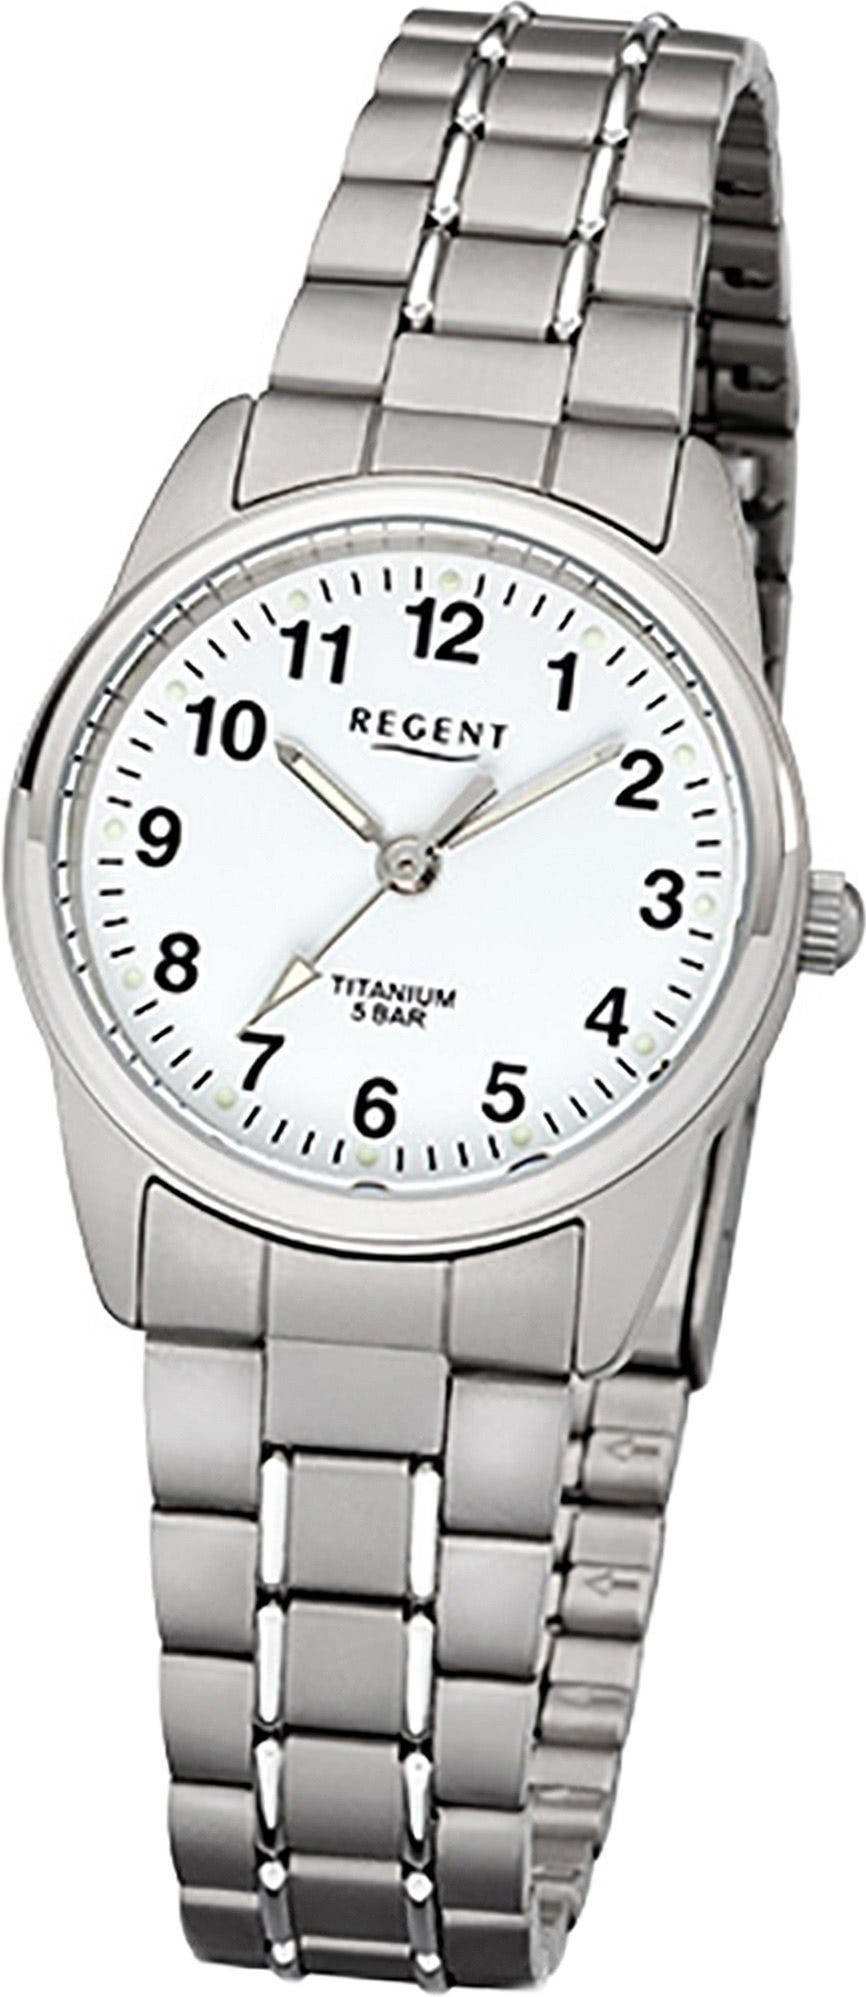 Regent Quarzuhr Regent Titan Damen Uhr F-1085 Quarzuhr, Damenuhr Titanarmband silber, grau, rundes Gehäuse, klein (ca. 26mm)